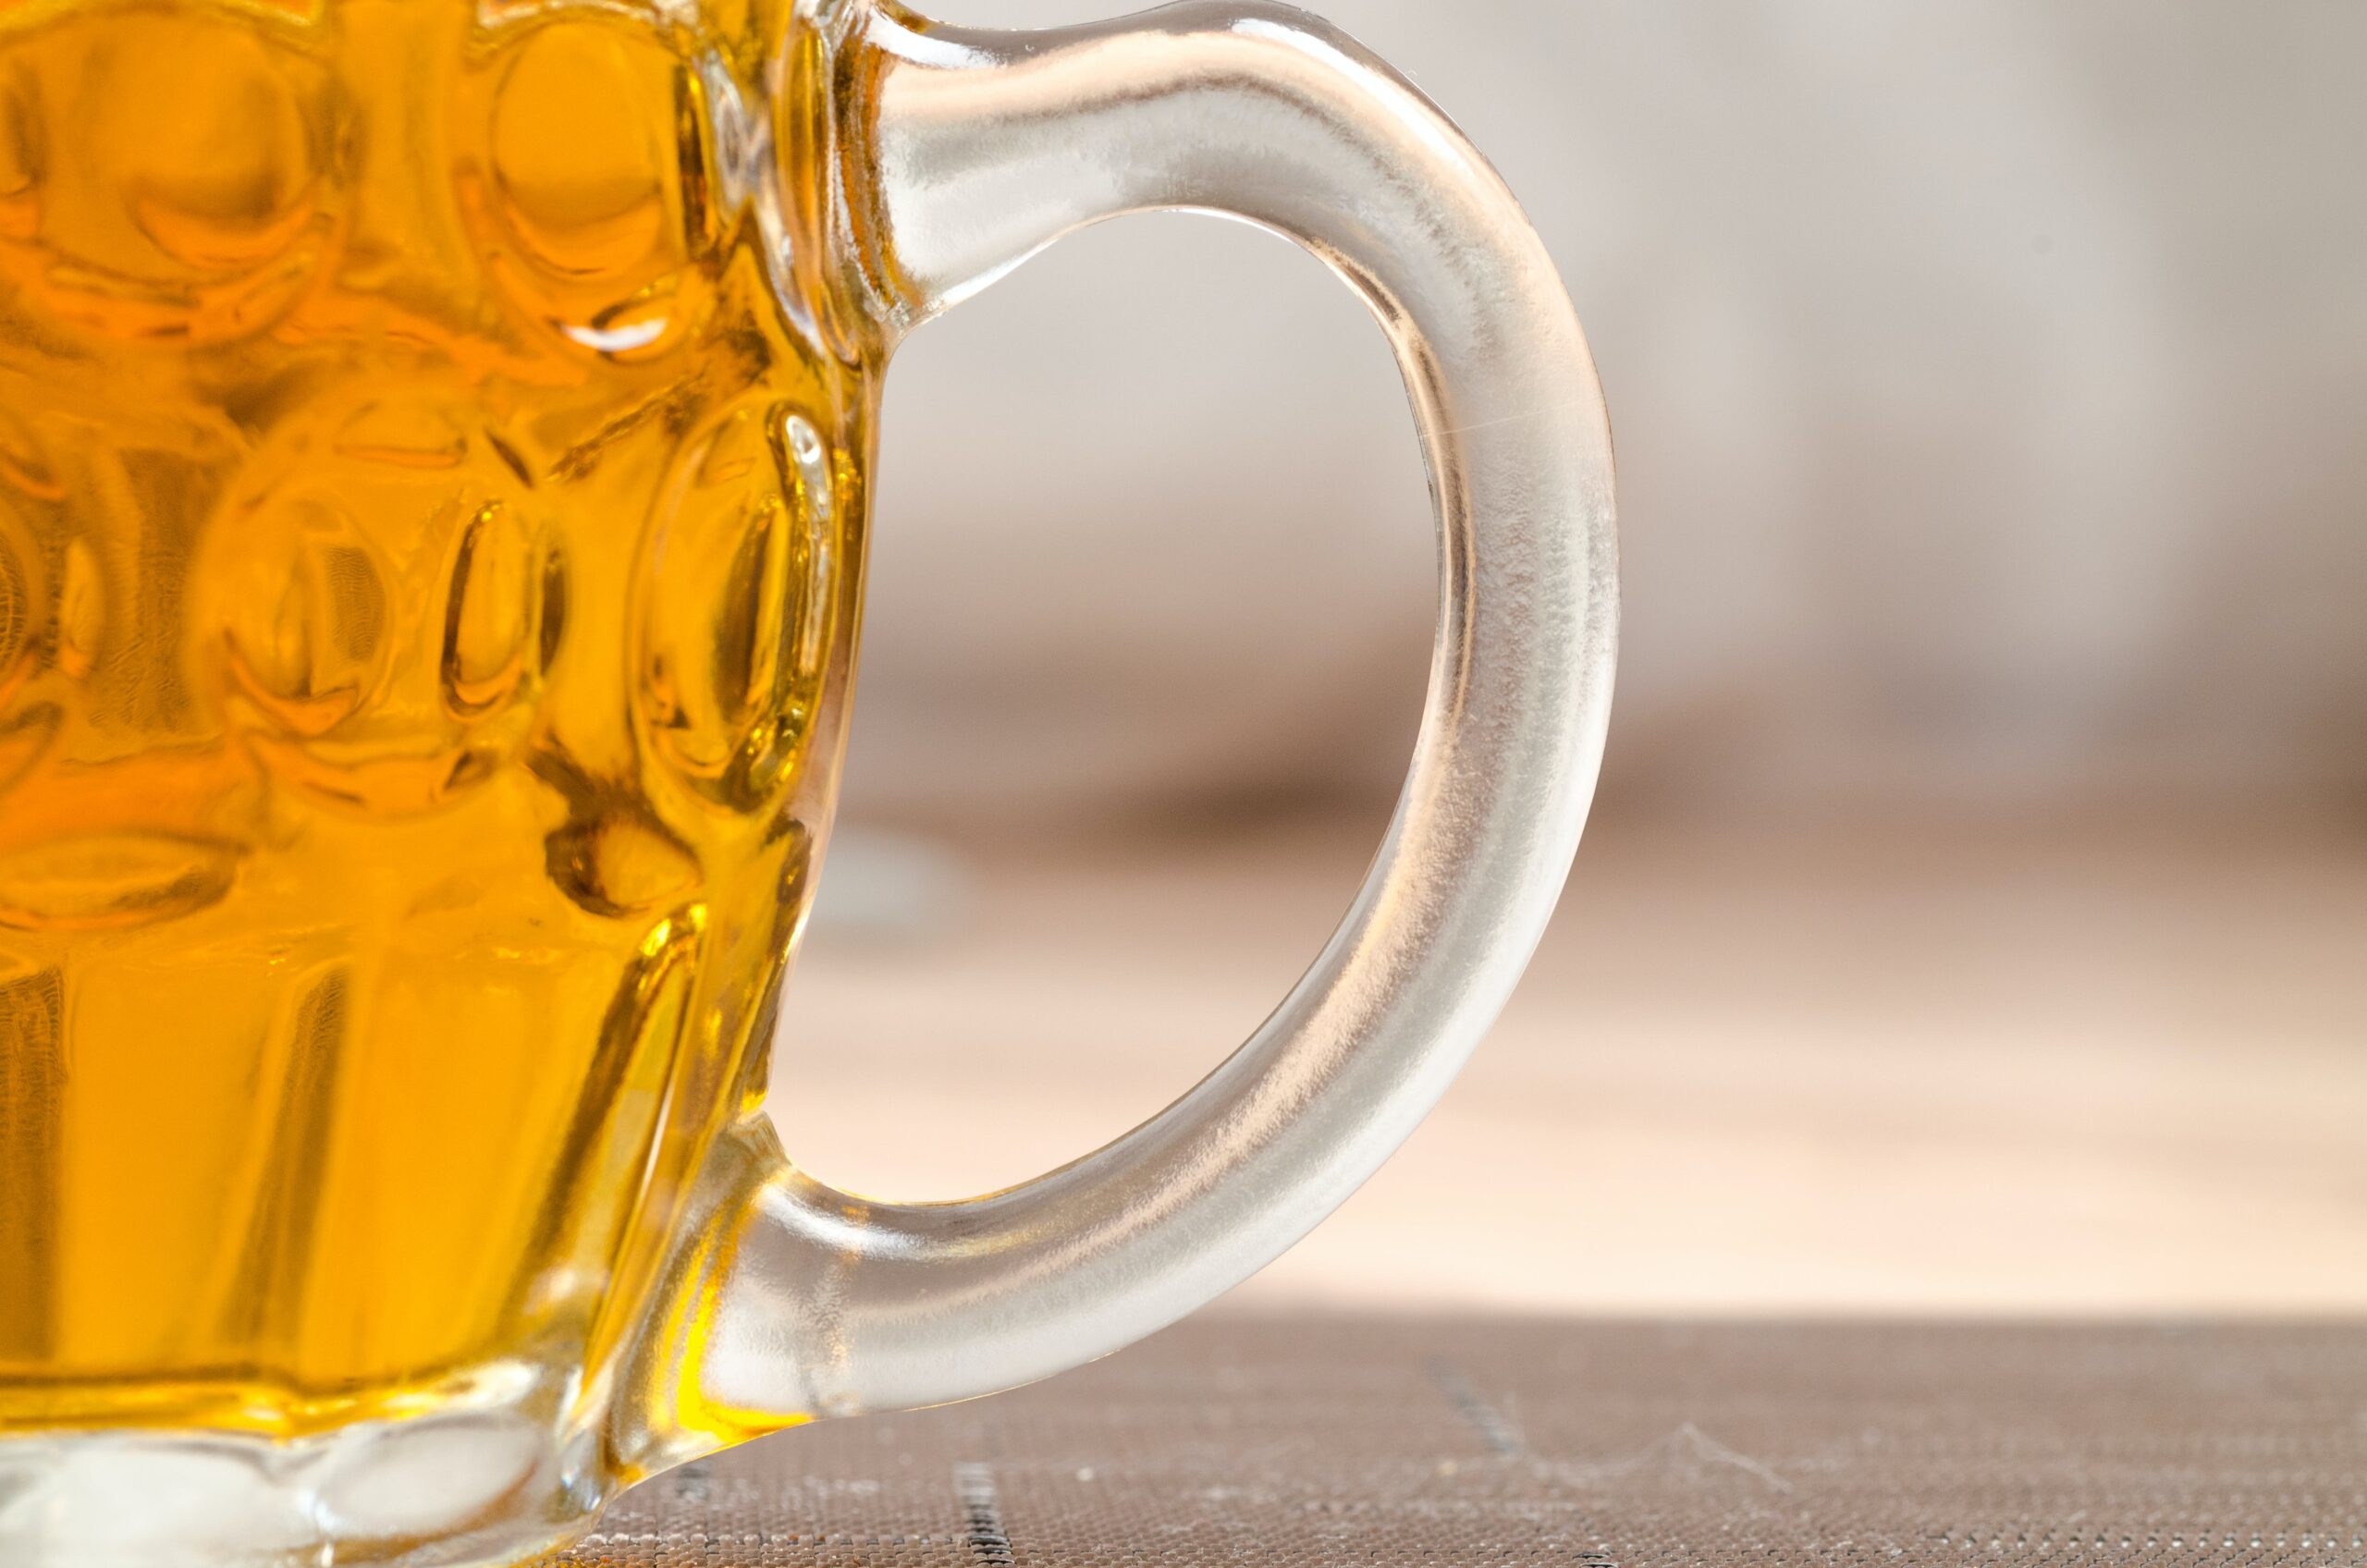 Descubre la mejor cerveza checa en nuestro ranking